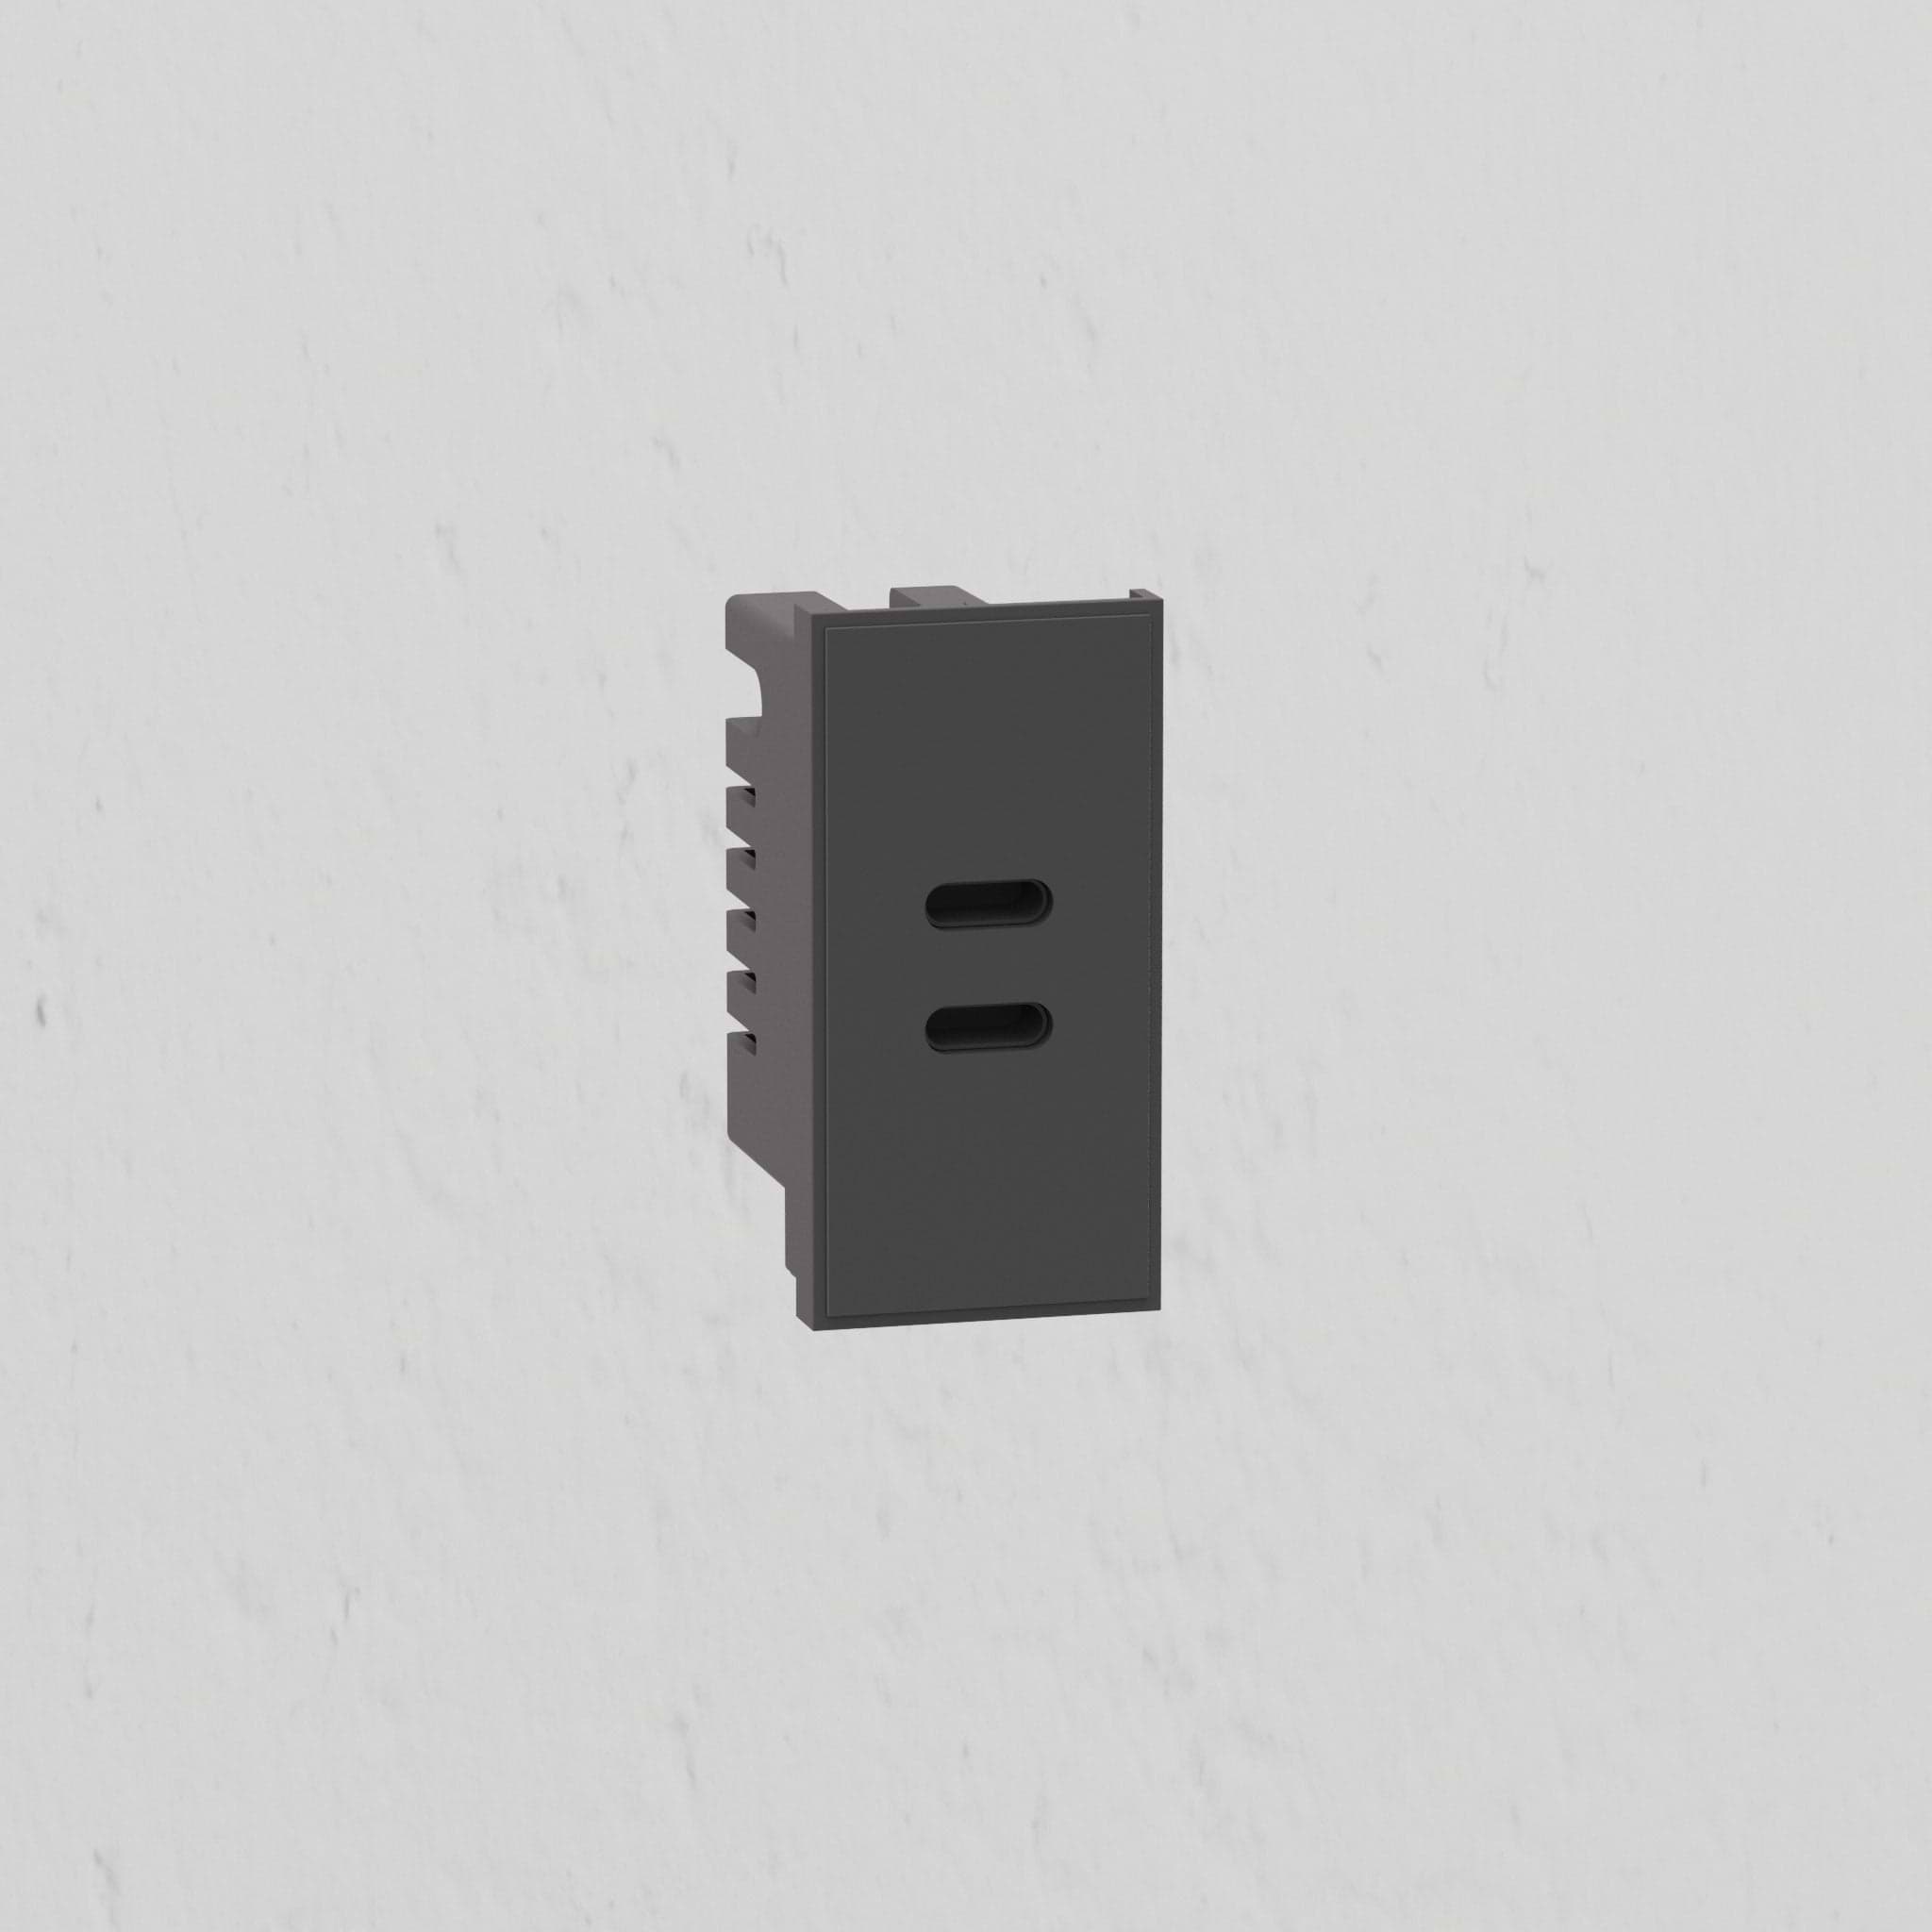 USB C+C Outlet Module 25mm - Black